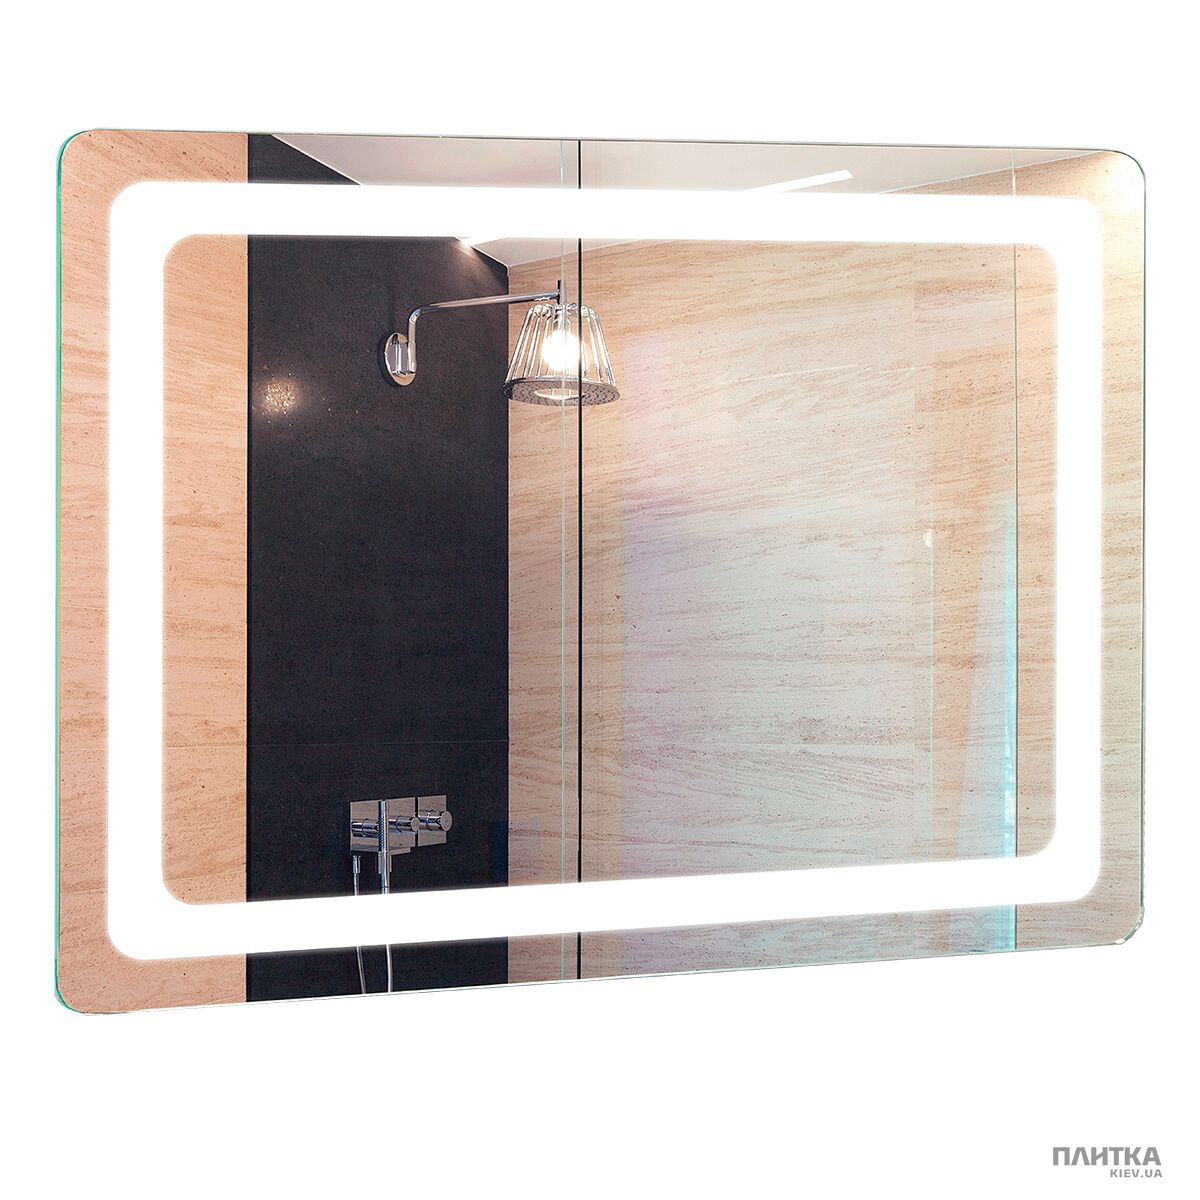 Зеркало для ванной Liberta FORLI с подсветкой и сенсором движения 800х700 хром